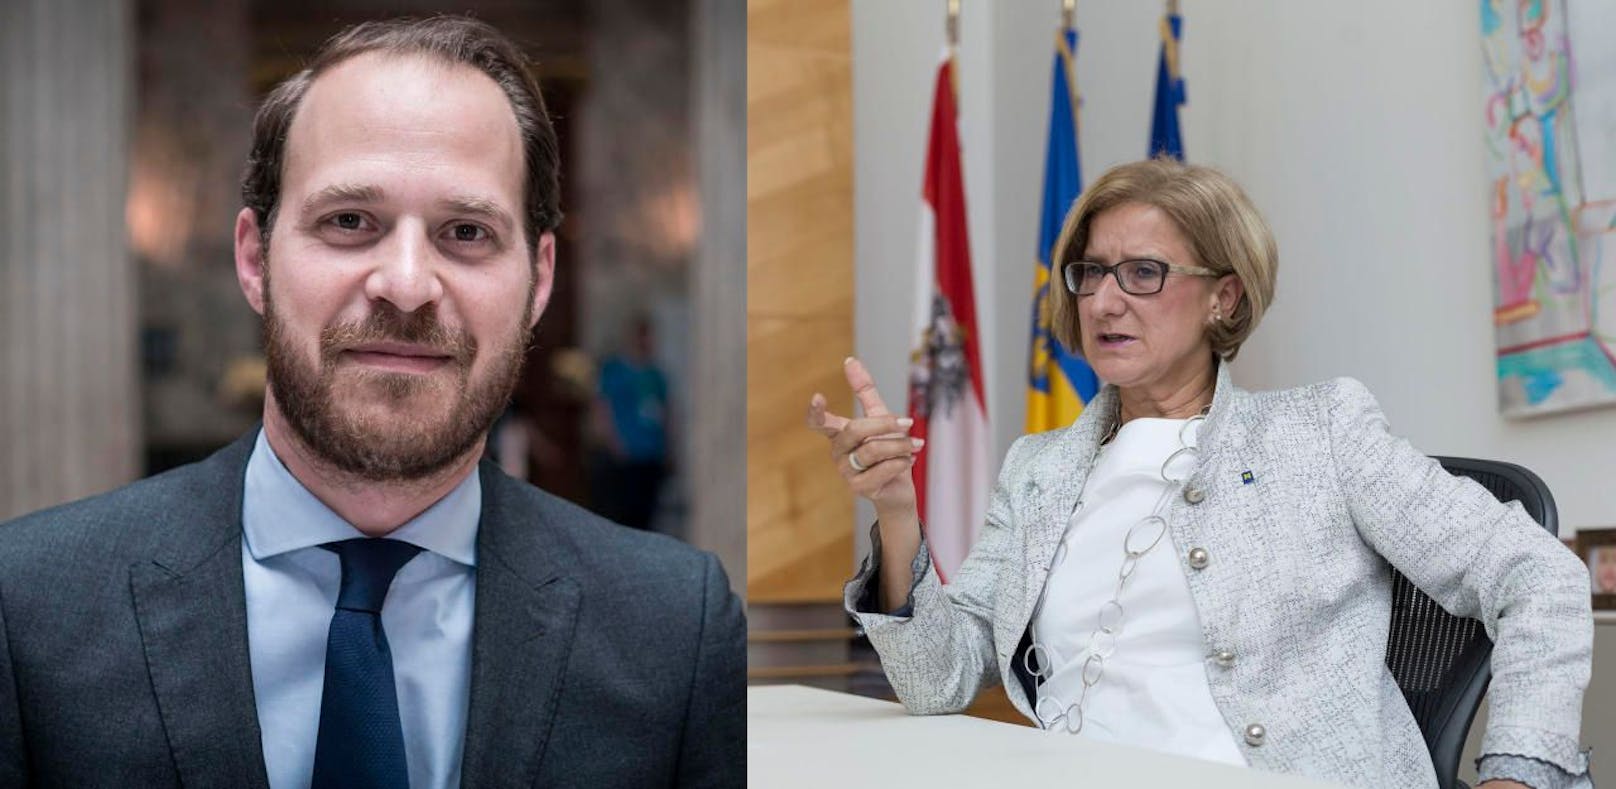 Niki Scherak, stellvertretender Bundesvorsitzender der Neos kritisiert NÖ-Landeshauptfrau Johanna Mikl-Leitner.